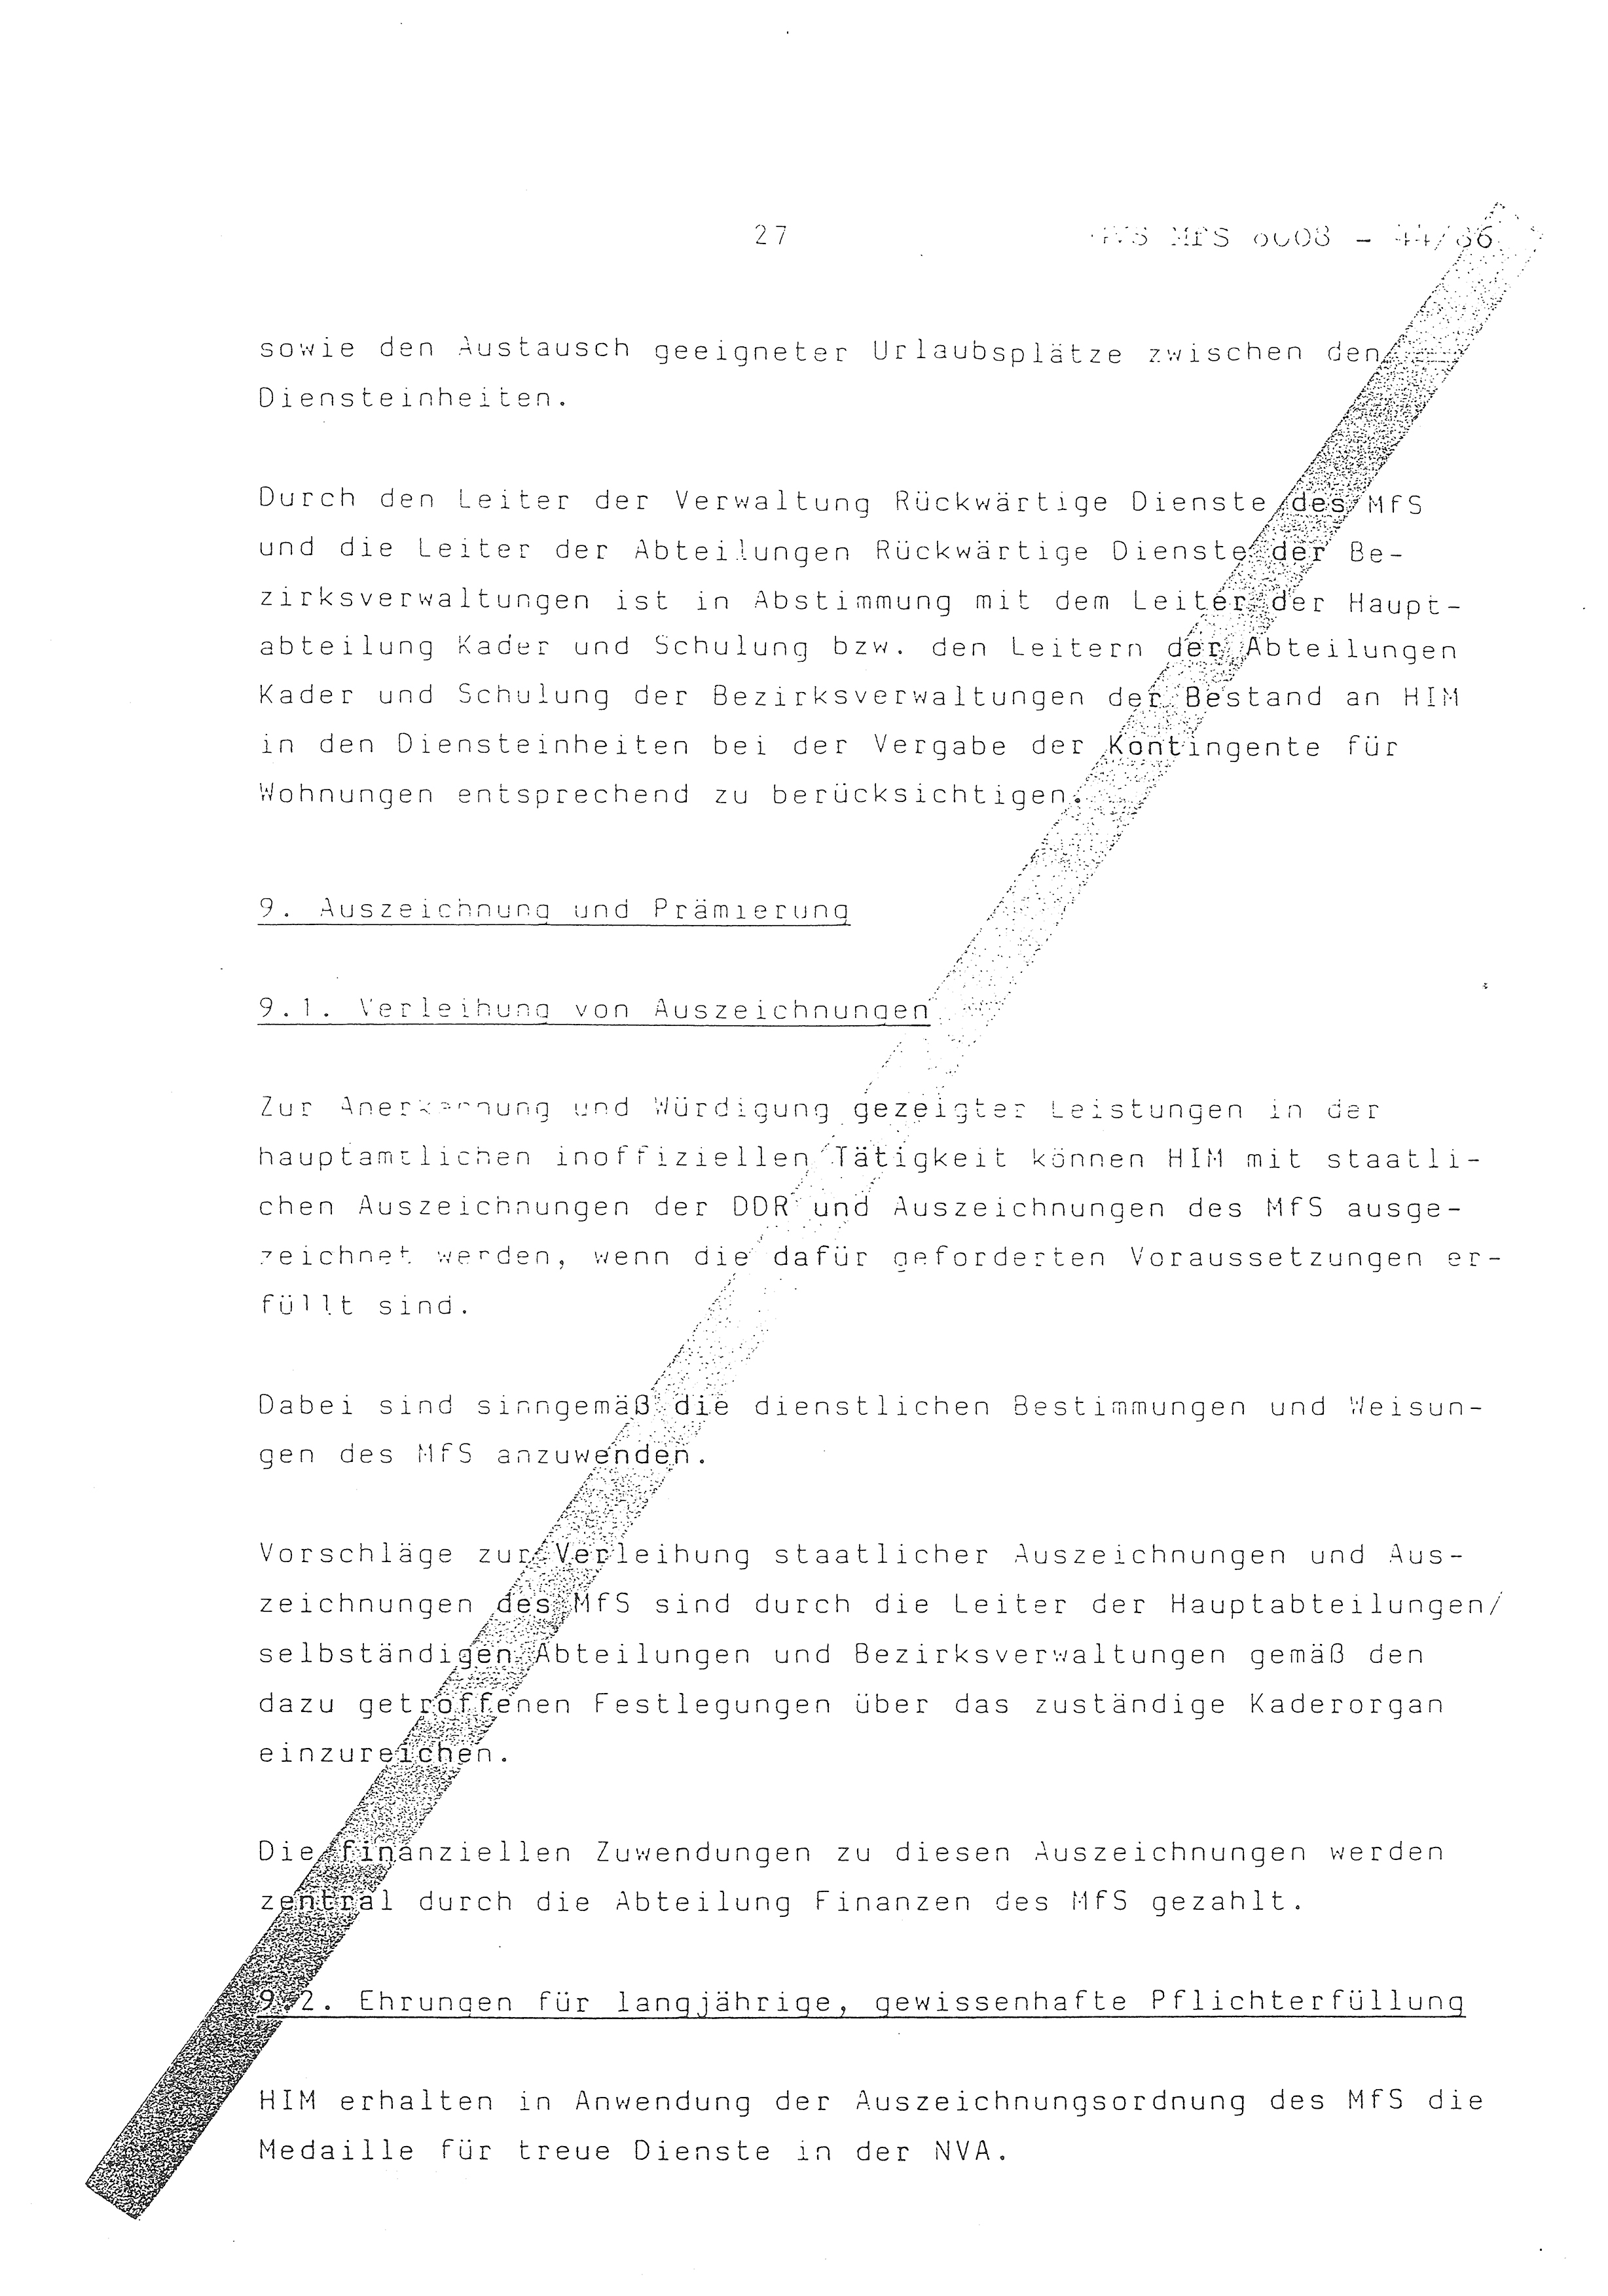 2. Durchführungsbestimmung zur Richtlinie 1/79 über die Arbeit mit hauptamtlichen Mitarbeitern des MfS (HIM), Deutsche Demokratische Republik (DDR), Ministerium für Staatssicherheit (MfS), Der Minister (Mielke), Geheime Verschlußsache (GVS) ooo8-44/86, Berlin 1986, Seite 27 (2. DB RL 1/79 DDR MfS Min. GVS ooo8-44/86 1986, S. 27)